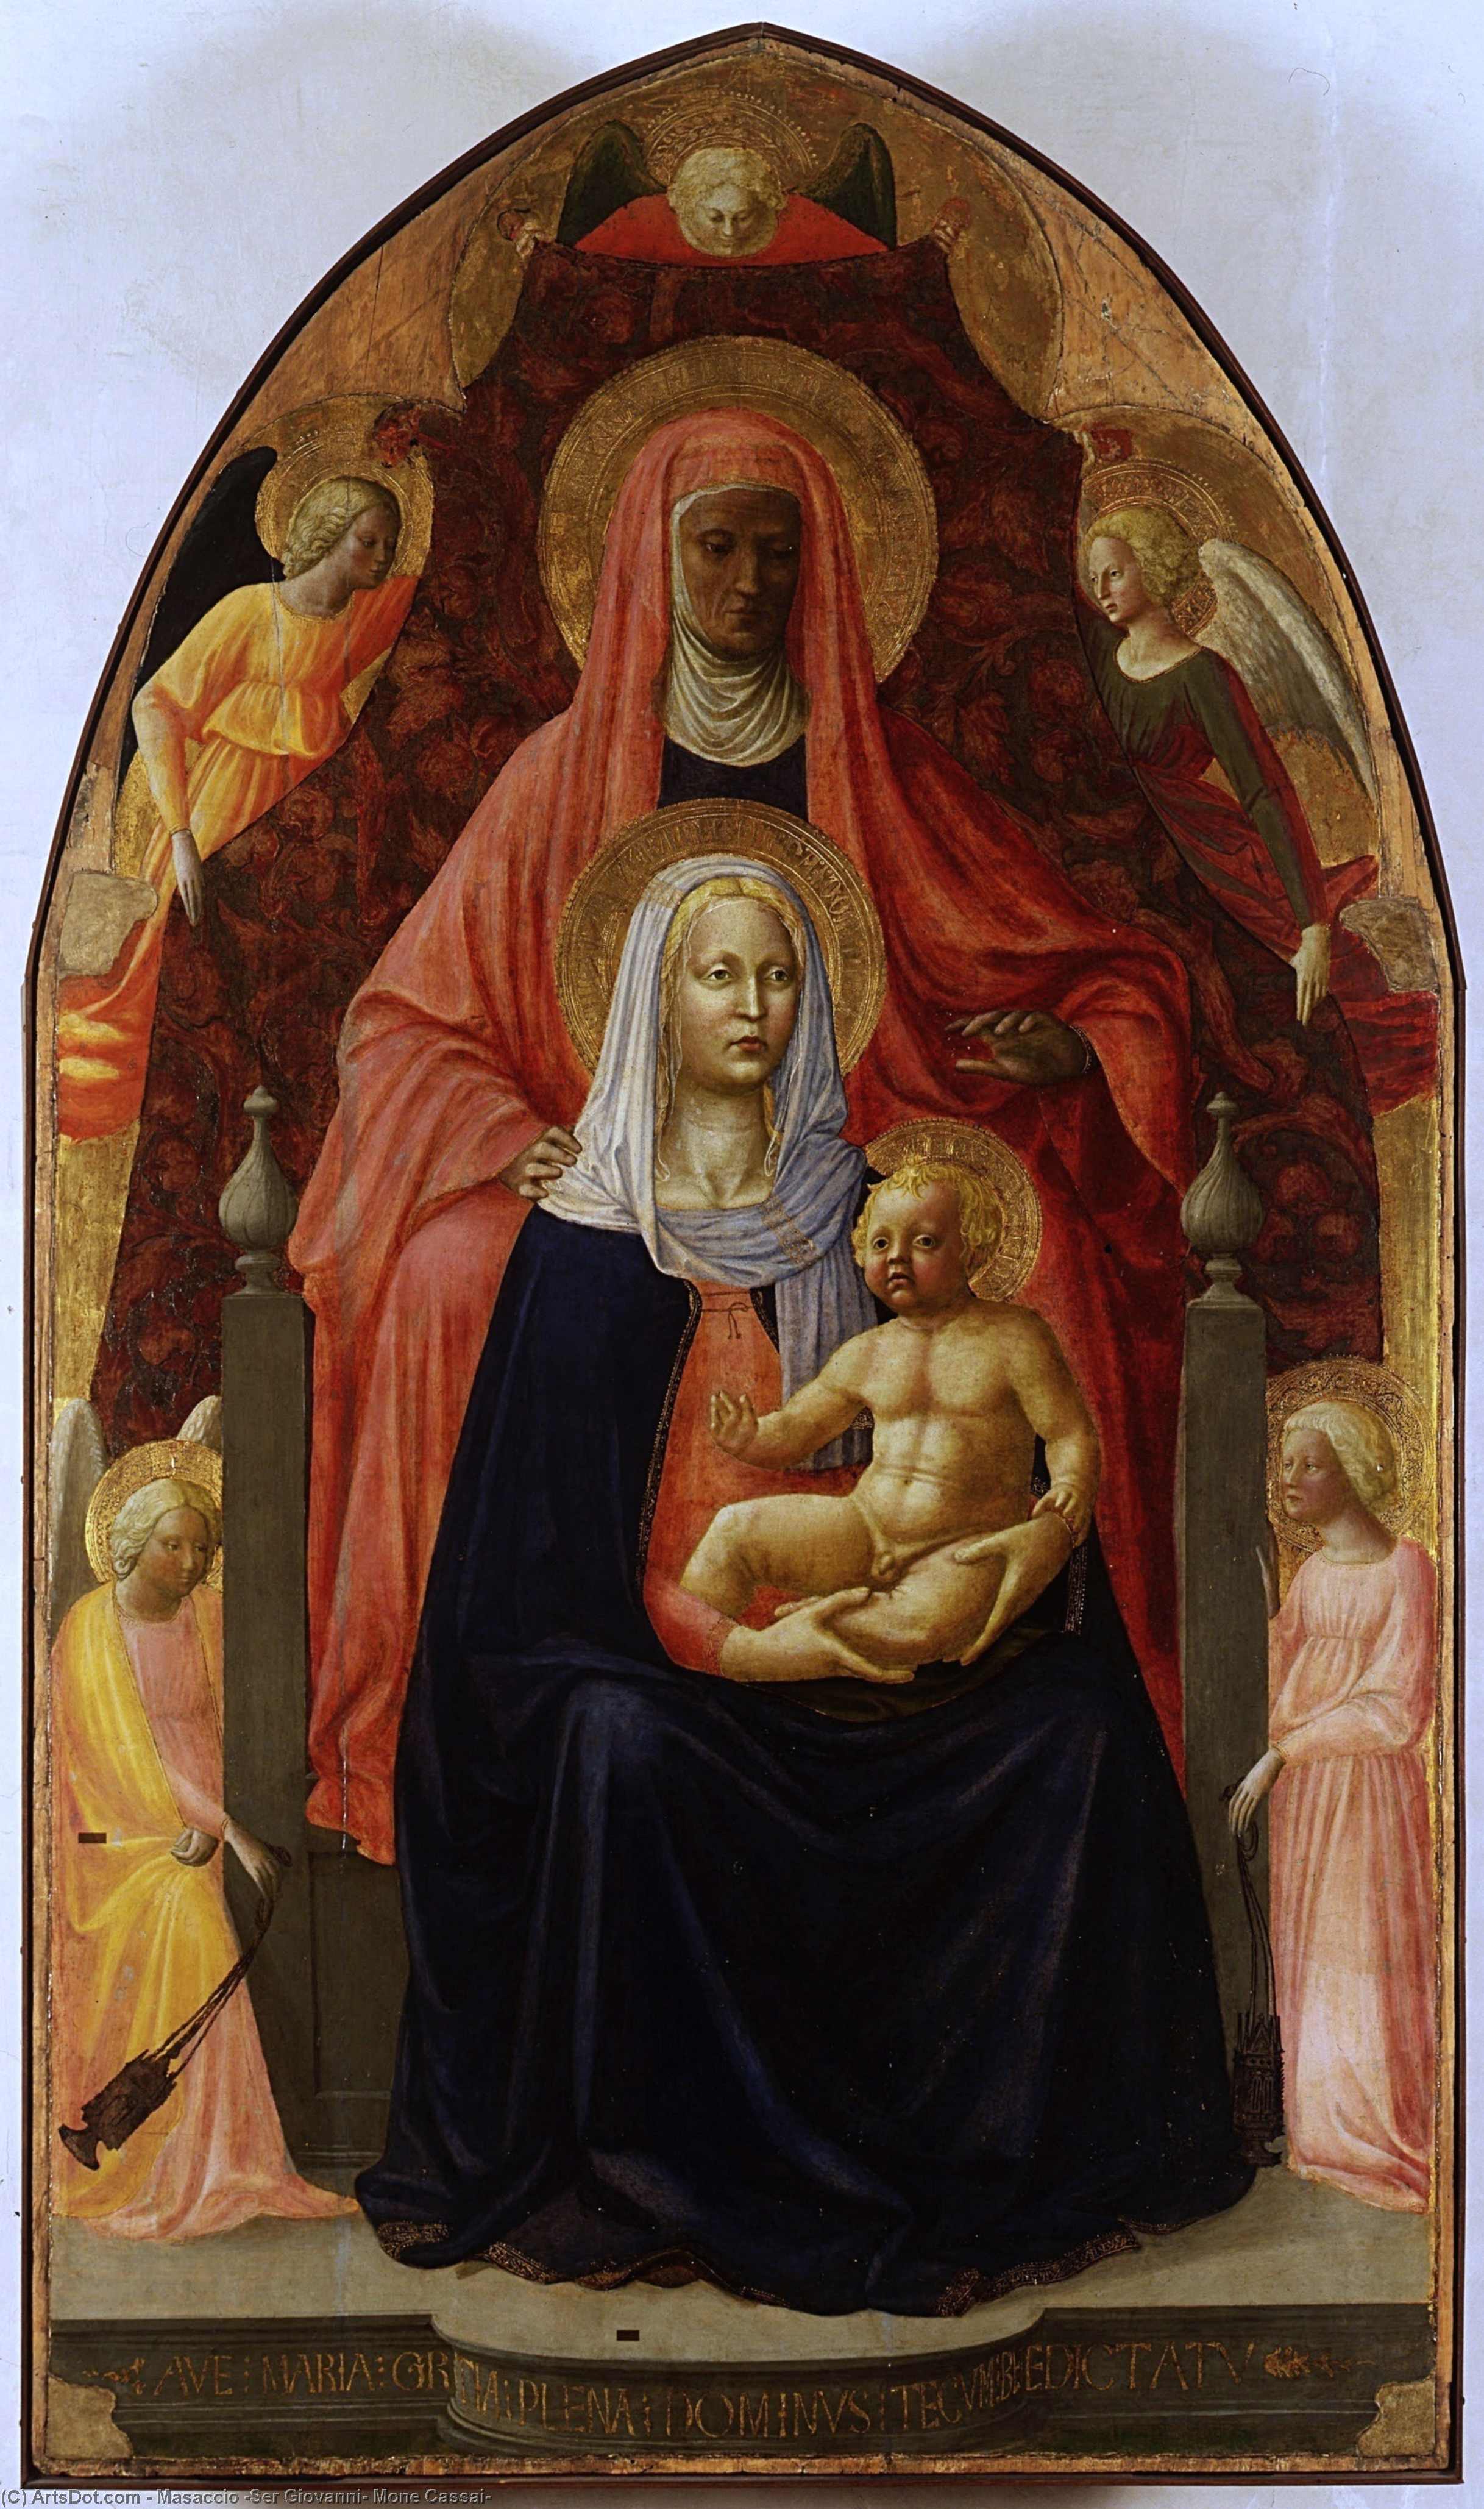 WikiOO.org - Encyclopedia of Fine Arts - Maleri, Artwork Masaccio (Ser Giovanni, Mone Cassai) - The Madonna and Child with st.Anna.